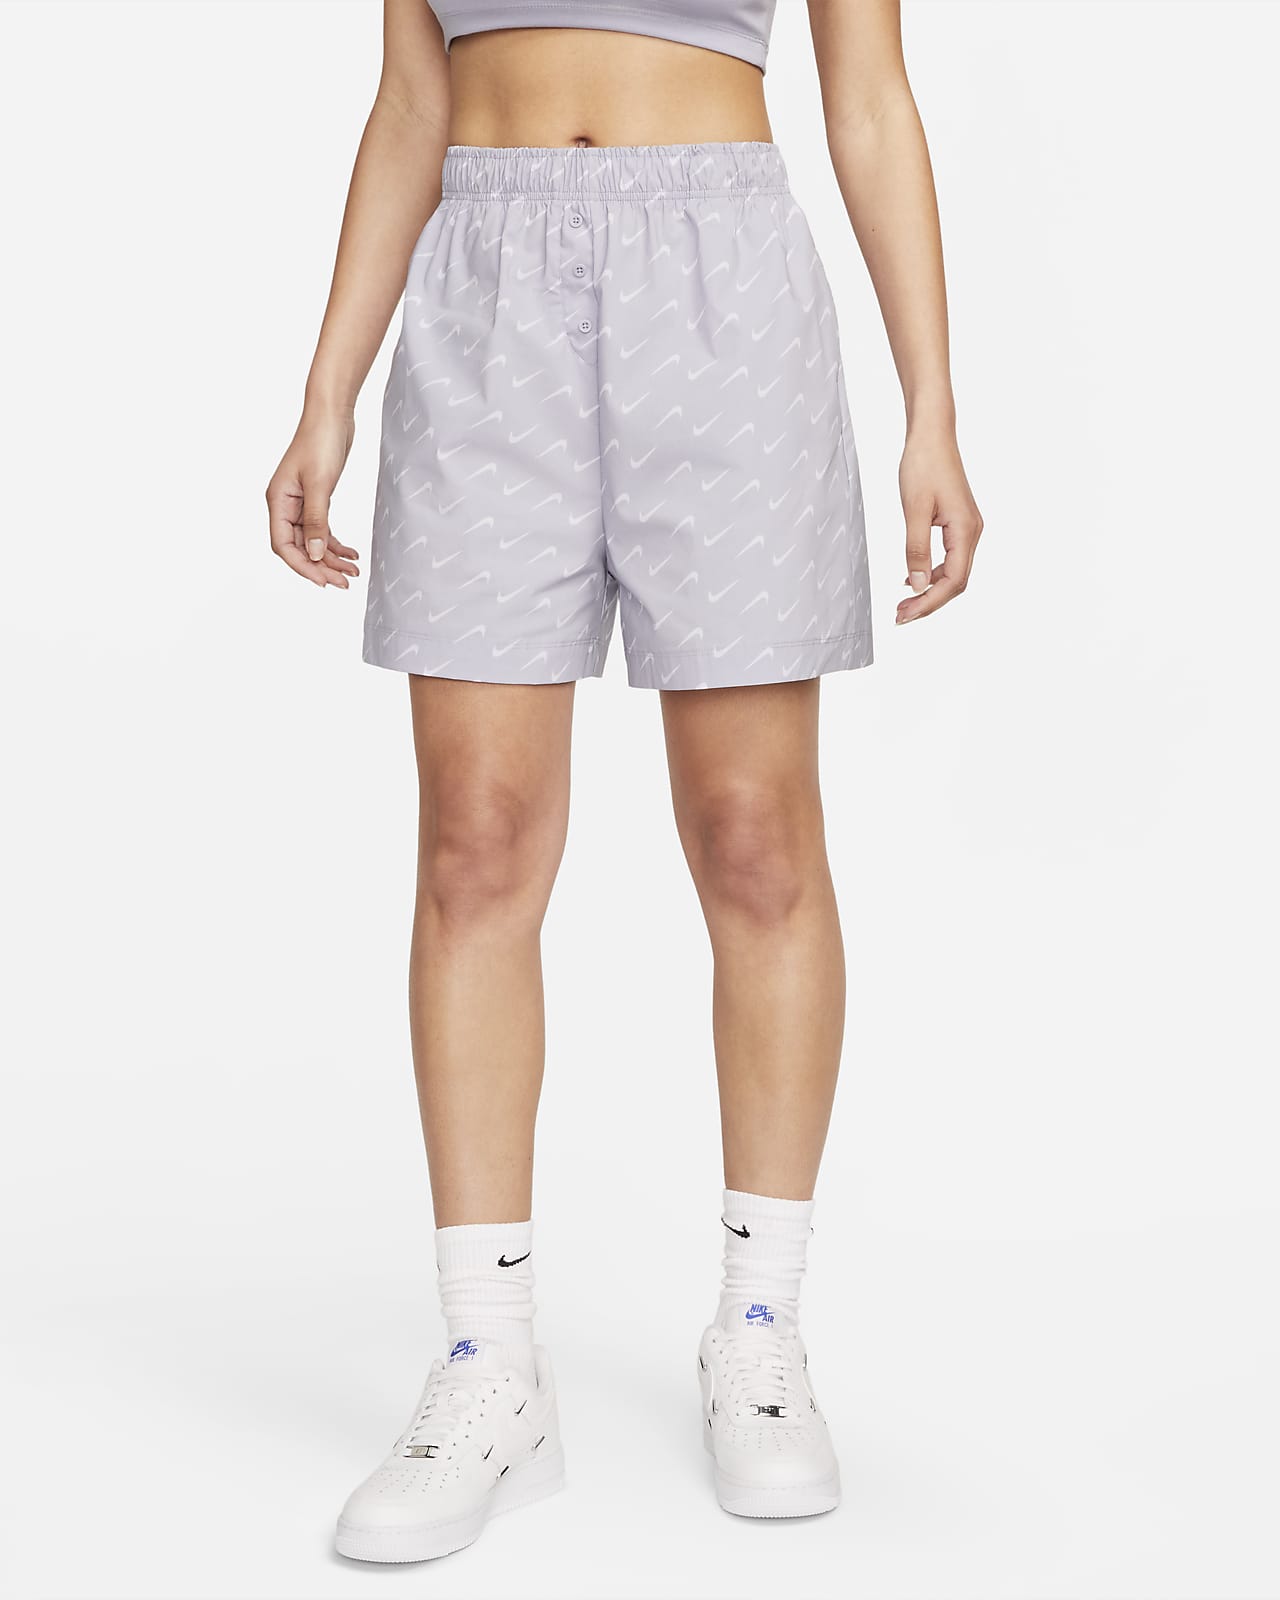 Nike Sportswear Everyday Modern Women's Woven Shorts.